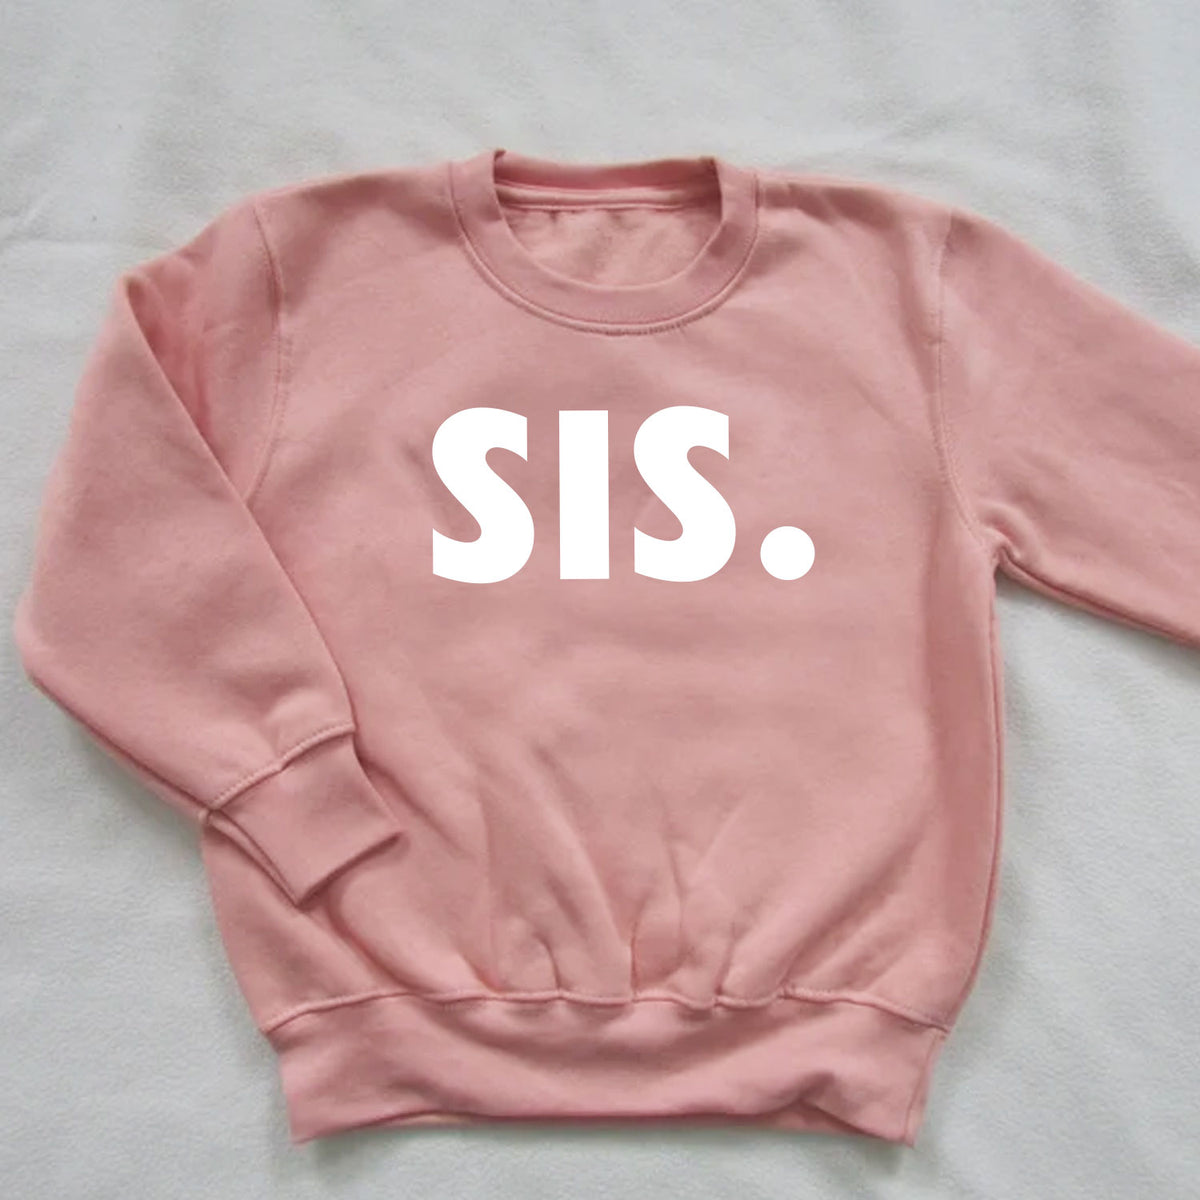 SIS. Sweatshirt